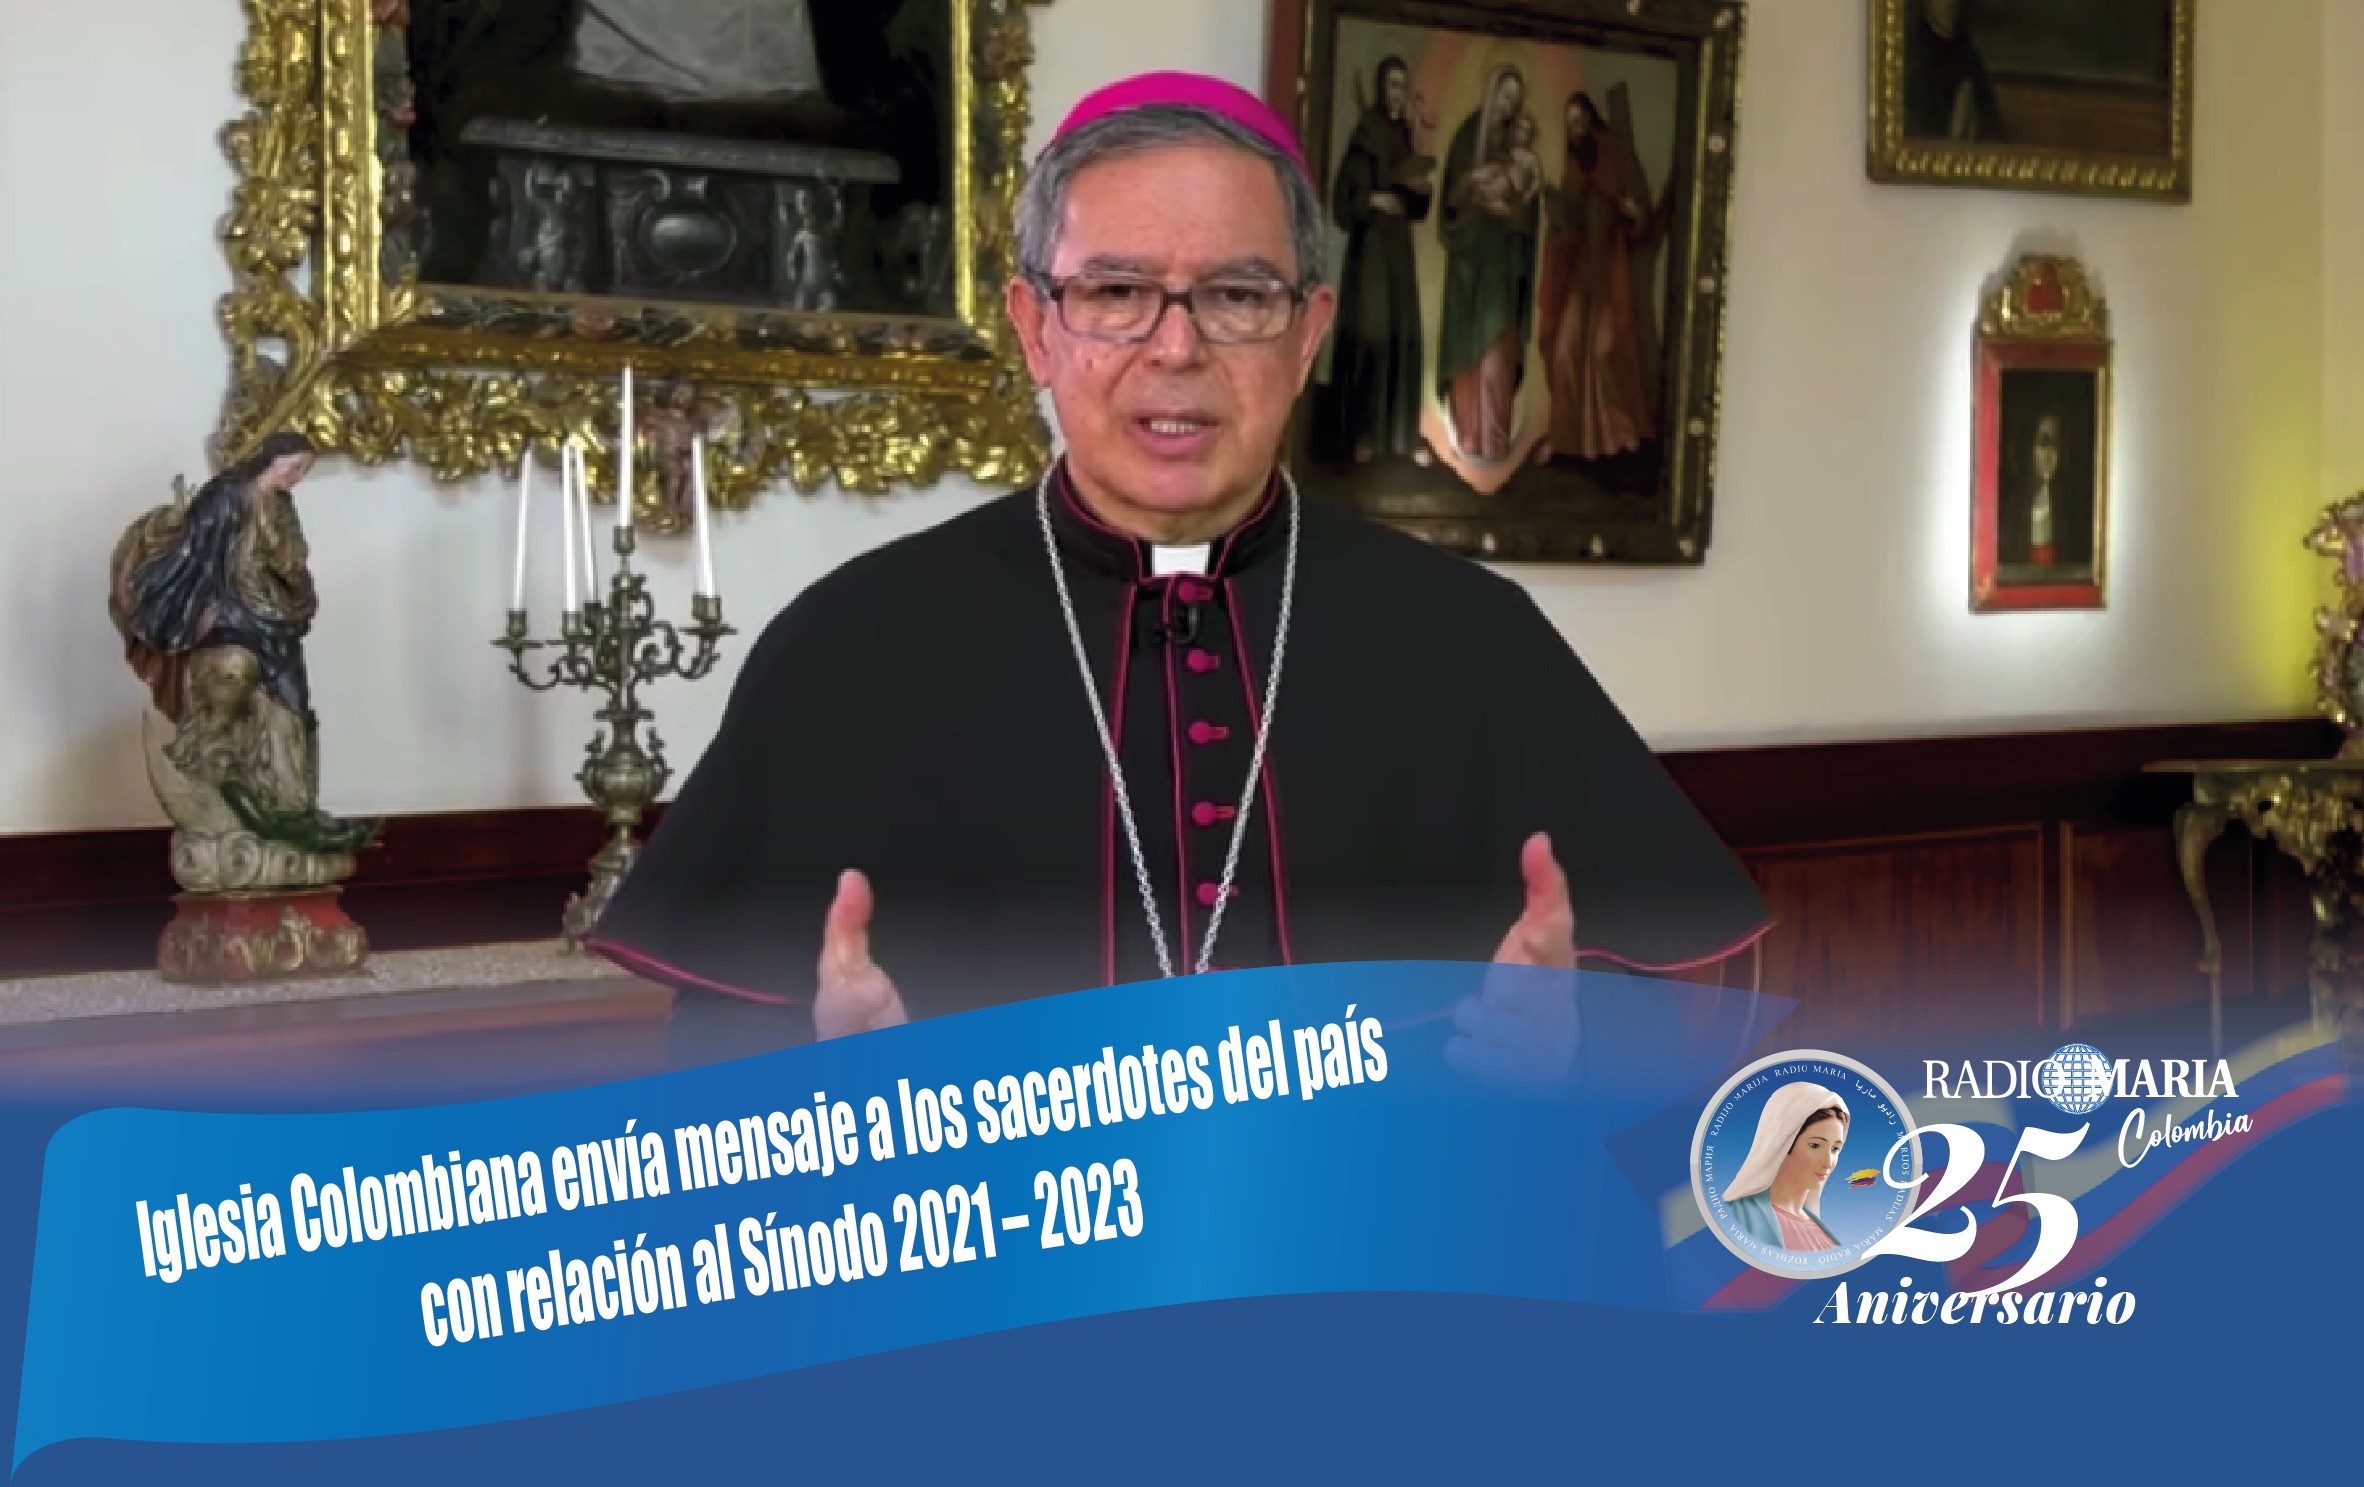 Iglesia de Colombia envía mensaje a los Sacerdotes del pais con relacion al Sínodo 2021-2023.